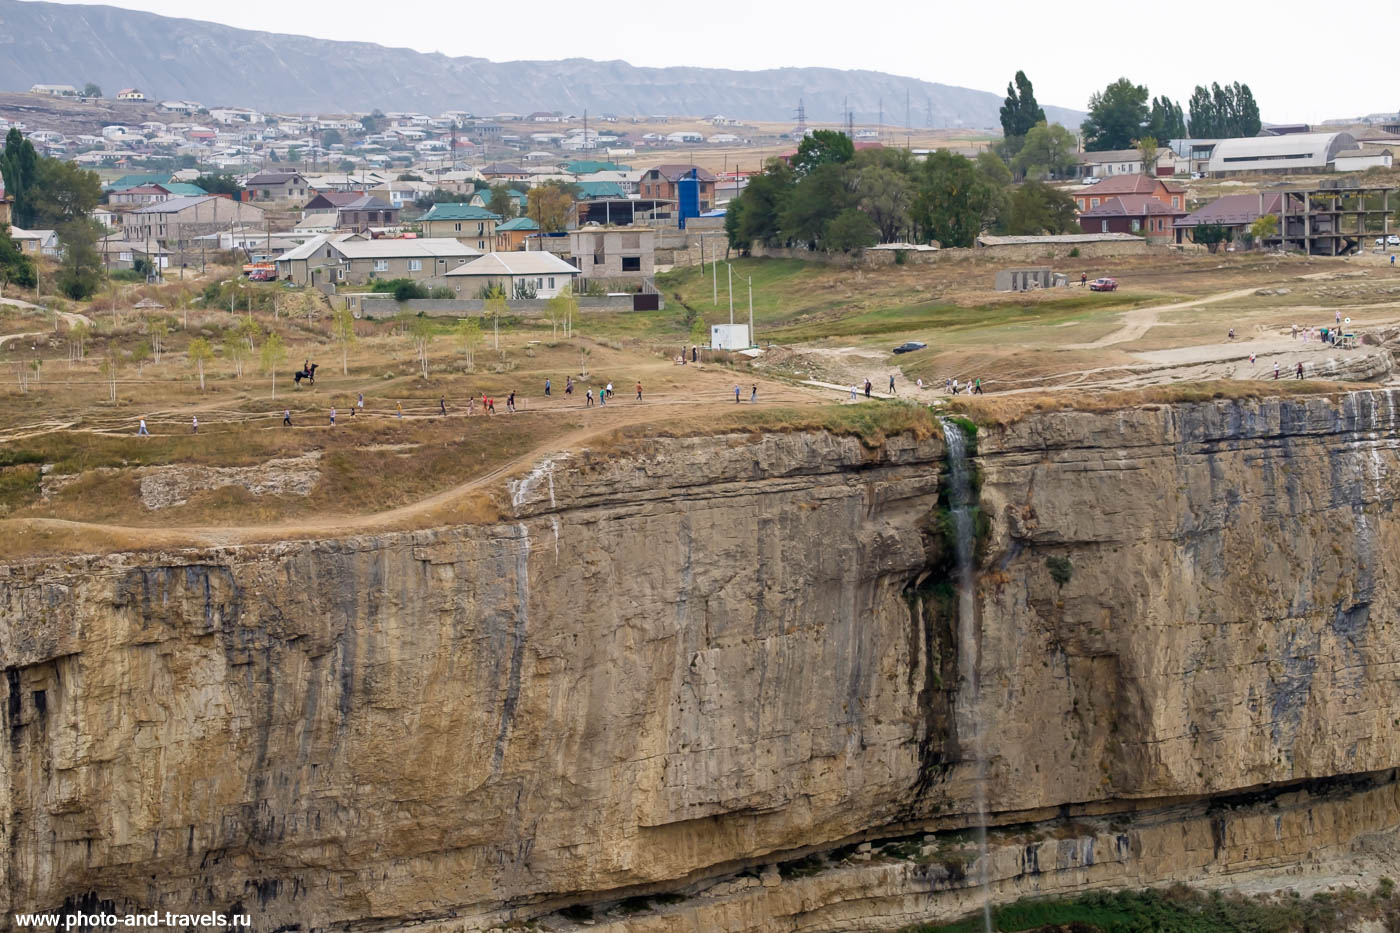 Фотография 16. Вид на водопад Итлятляр в селе Арани. Какие интересные места посетить в Дагестане? 1/200, 8.0, 200, -0.67, 55.